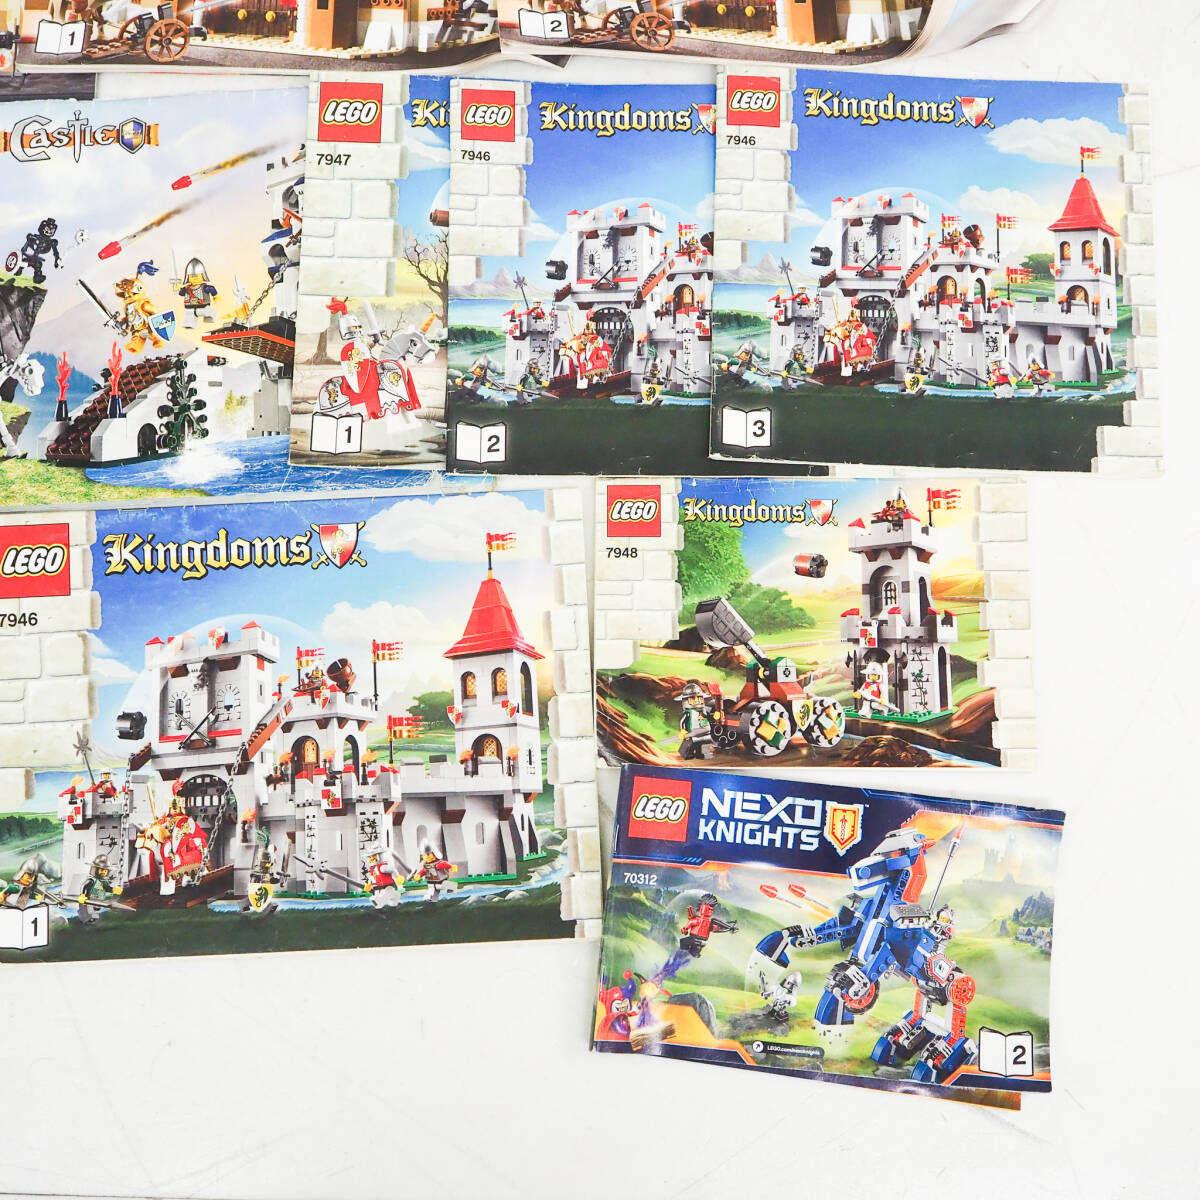 【ジャンク】LEGO レゴ 説明書 セット パイレーツオブカリビアン スターウォーズ Kingdoms Castle 6277 7946 7947 7079 オールド K5402_画像7